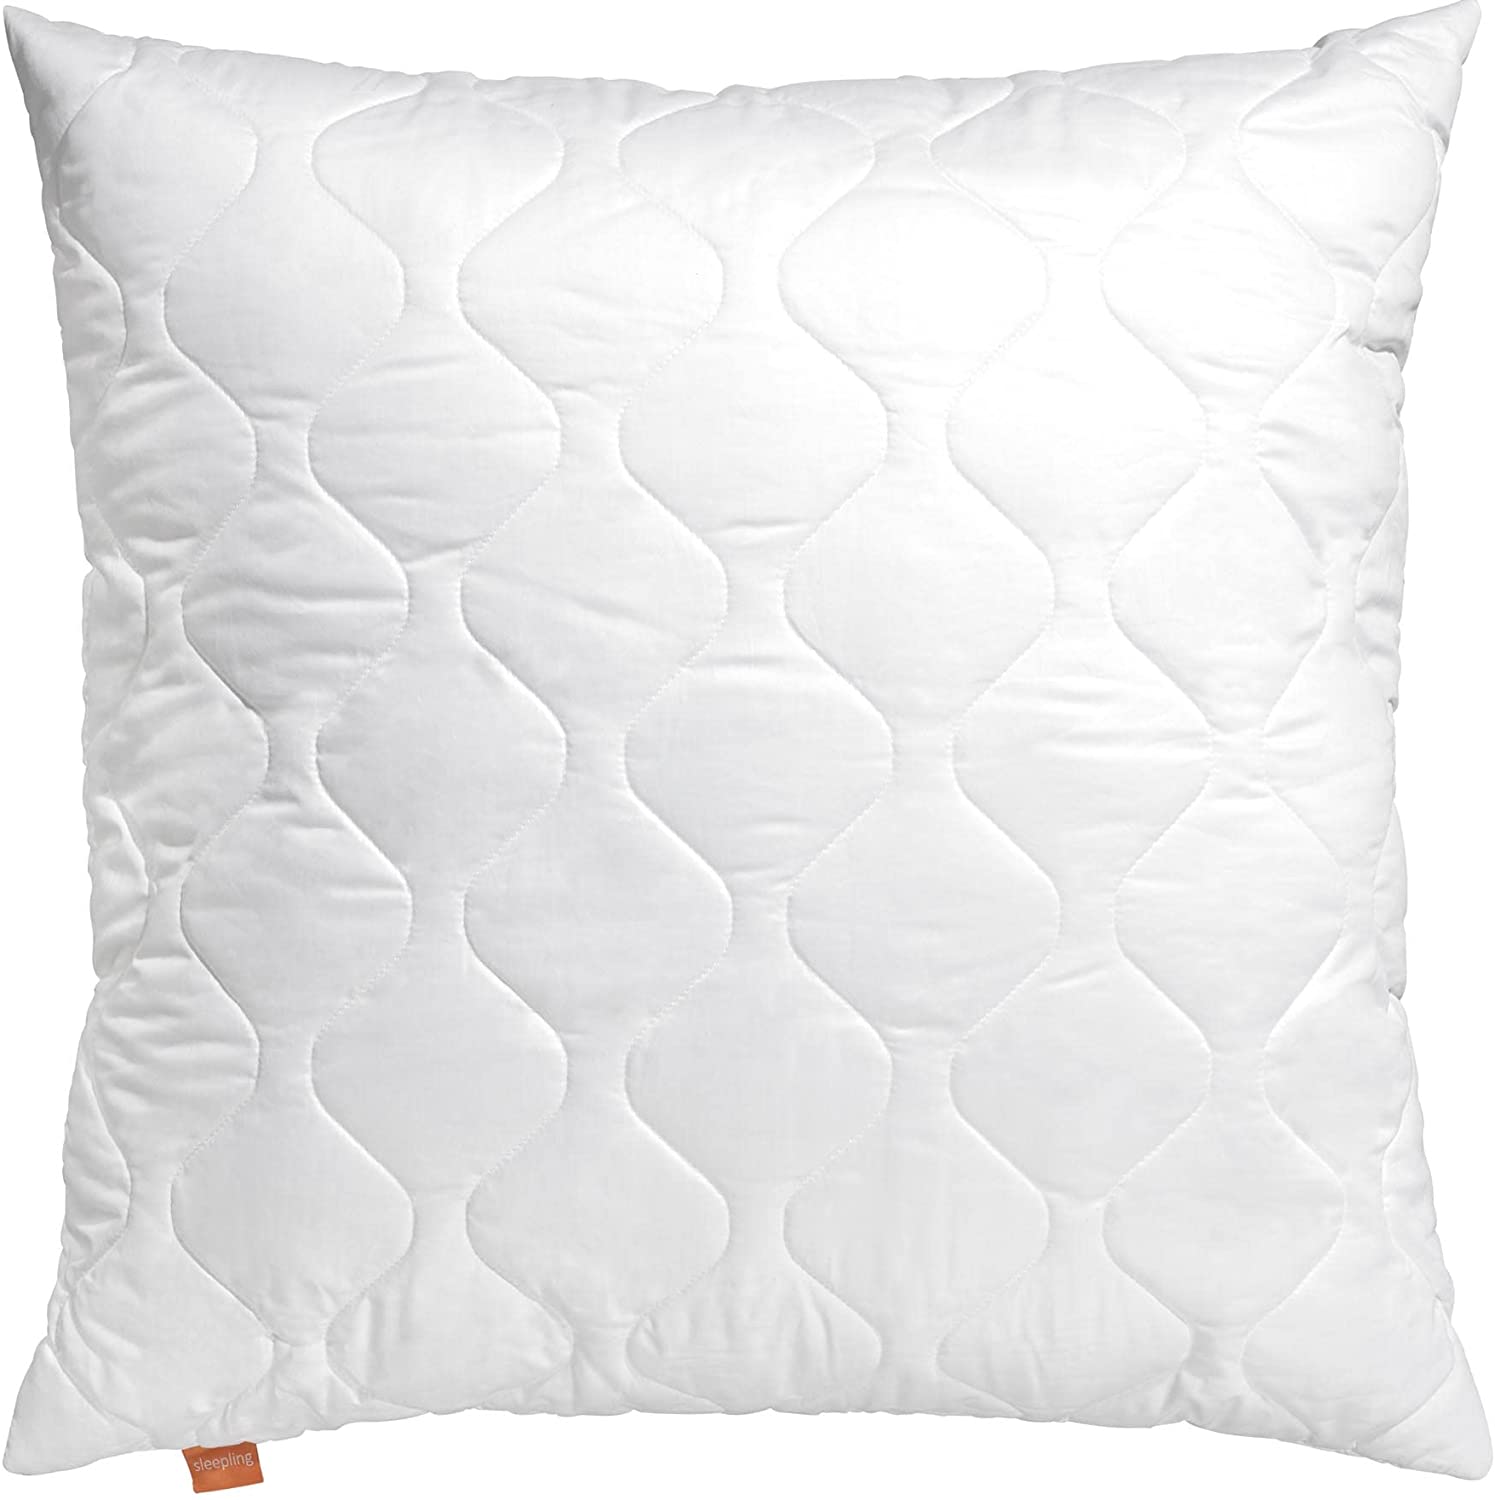 Sleepling 190001-P Basic 100 Microfibre Pillow in White, White, 80 x 80